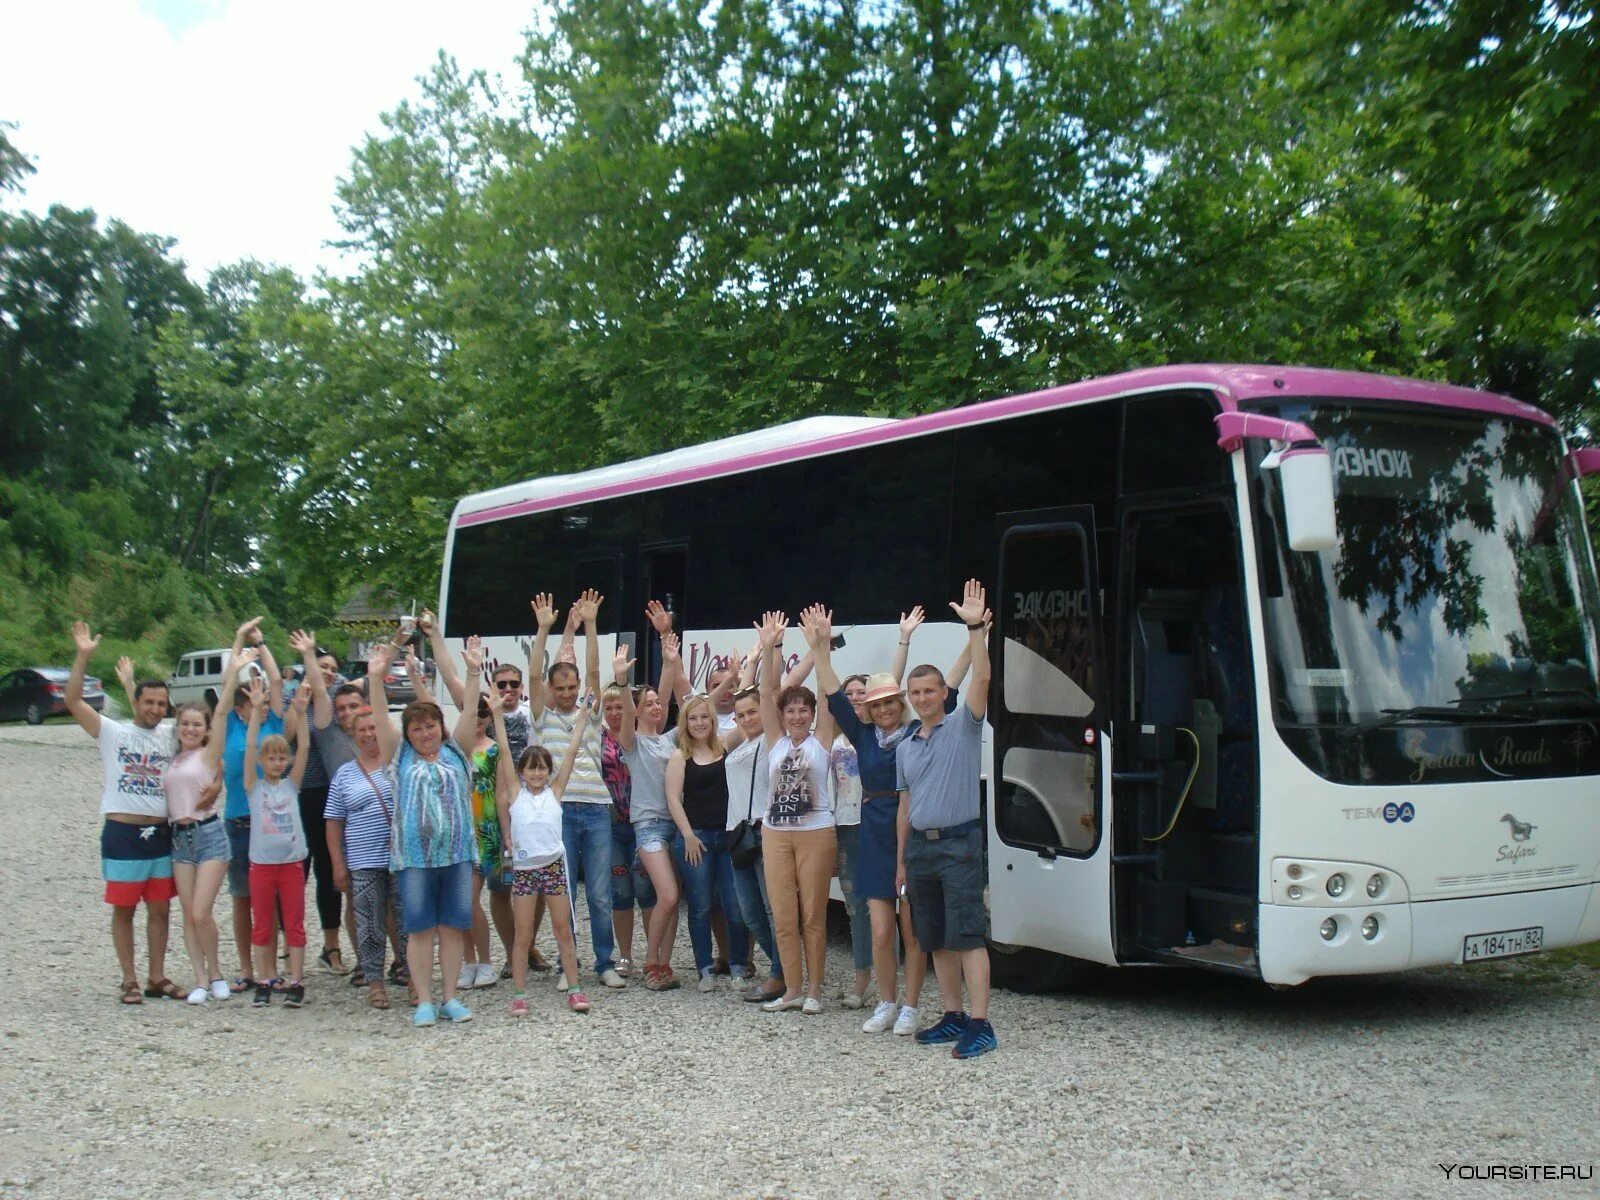 Отзывы автобусных экскурсиях. Экскурсия на автобусе. Автобусные туры. Экскурсионные автобусы в Абхазии. Туристические автобусы в Абхазии.